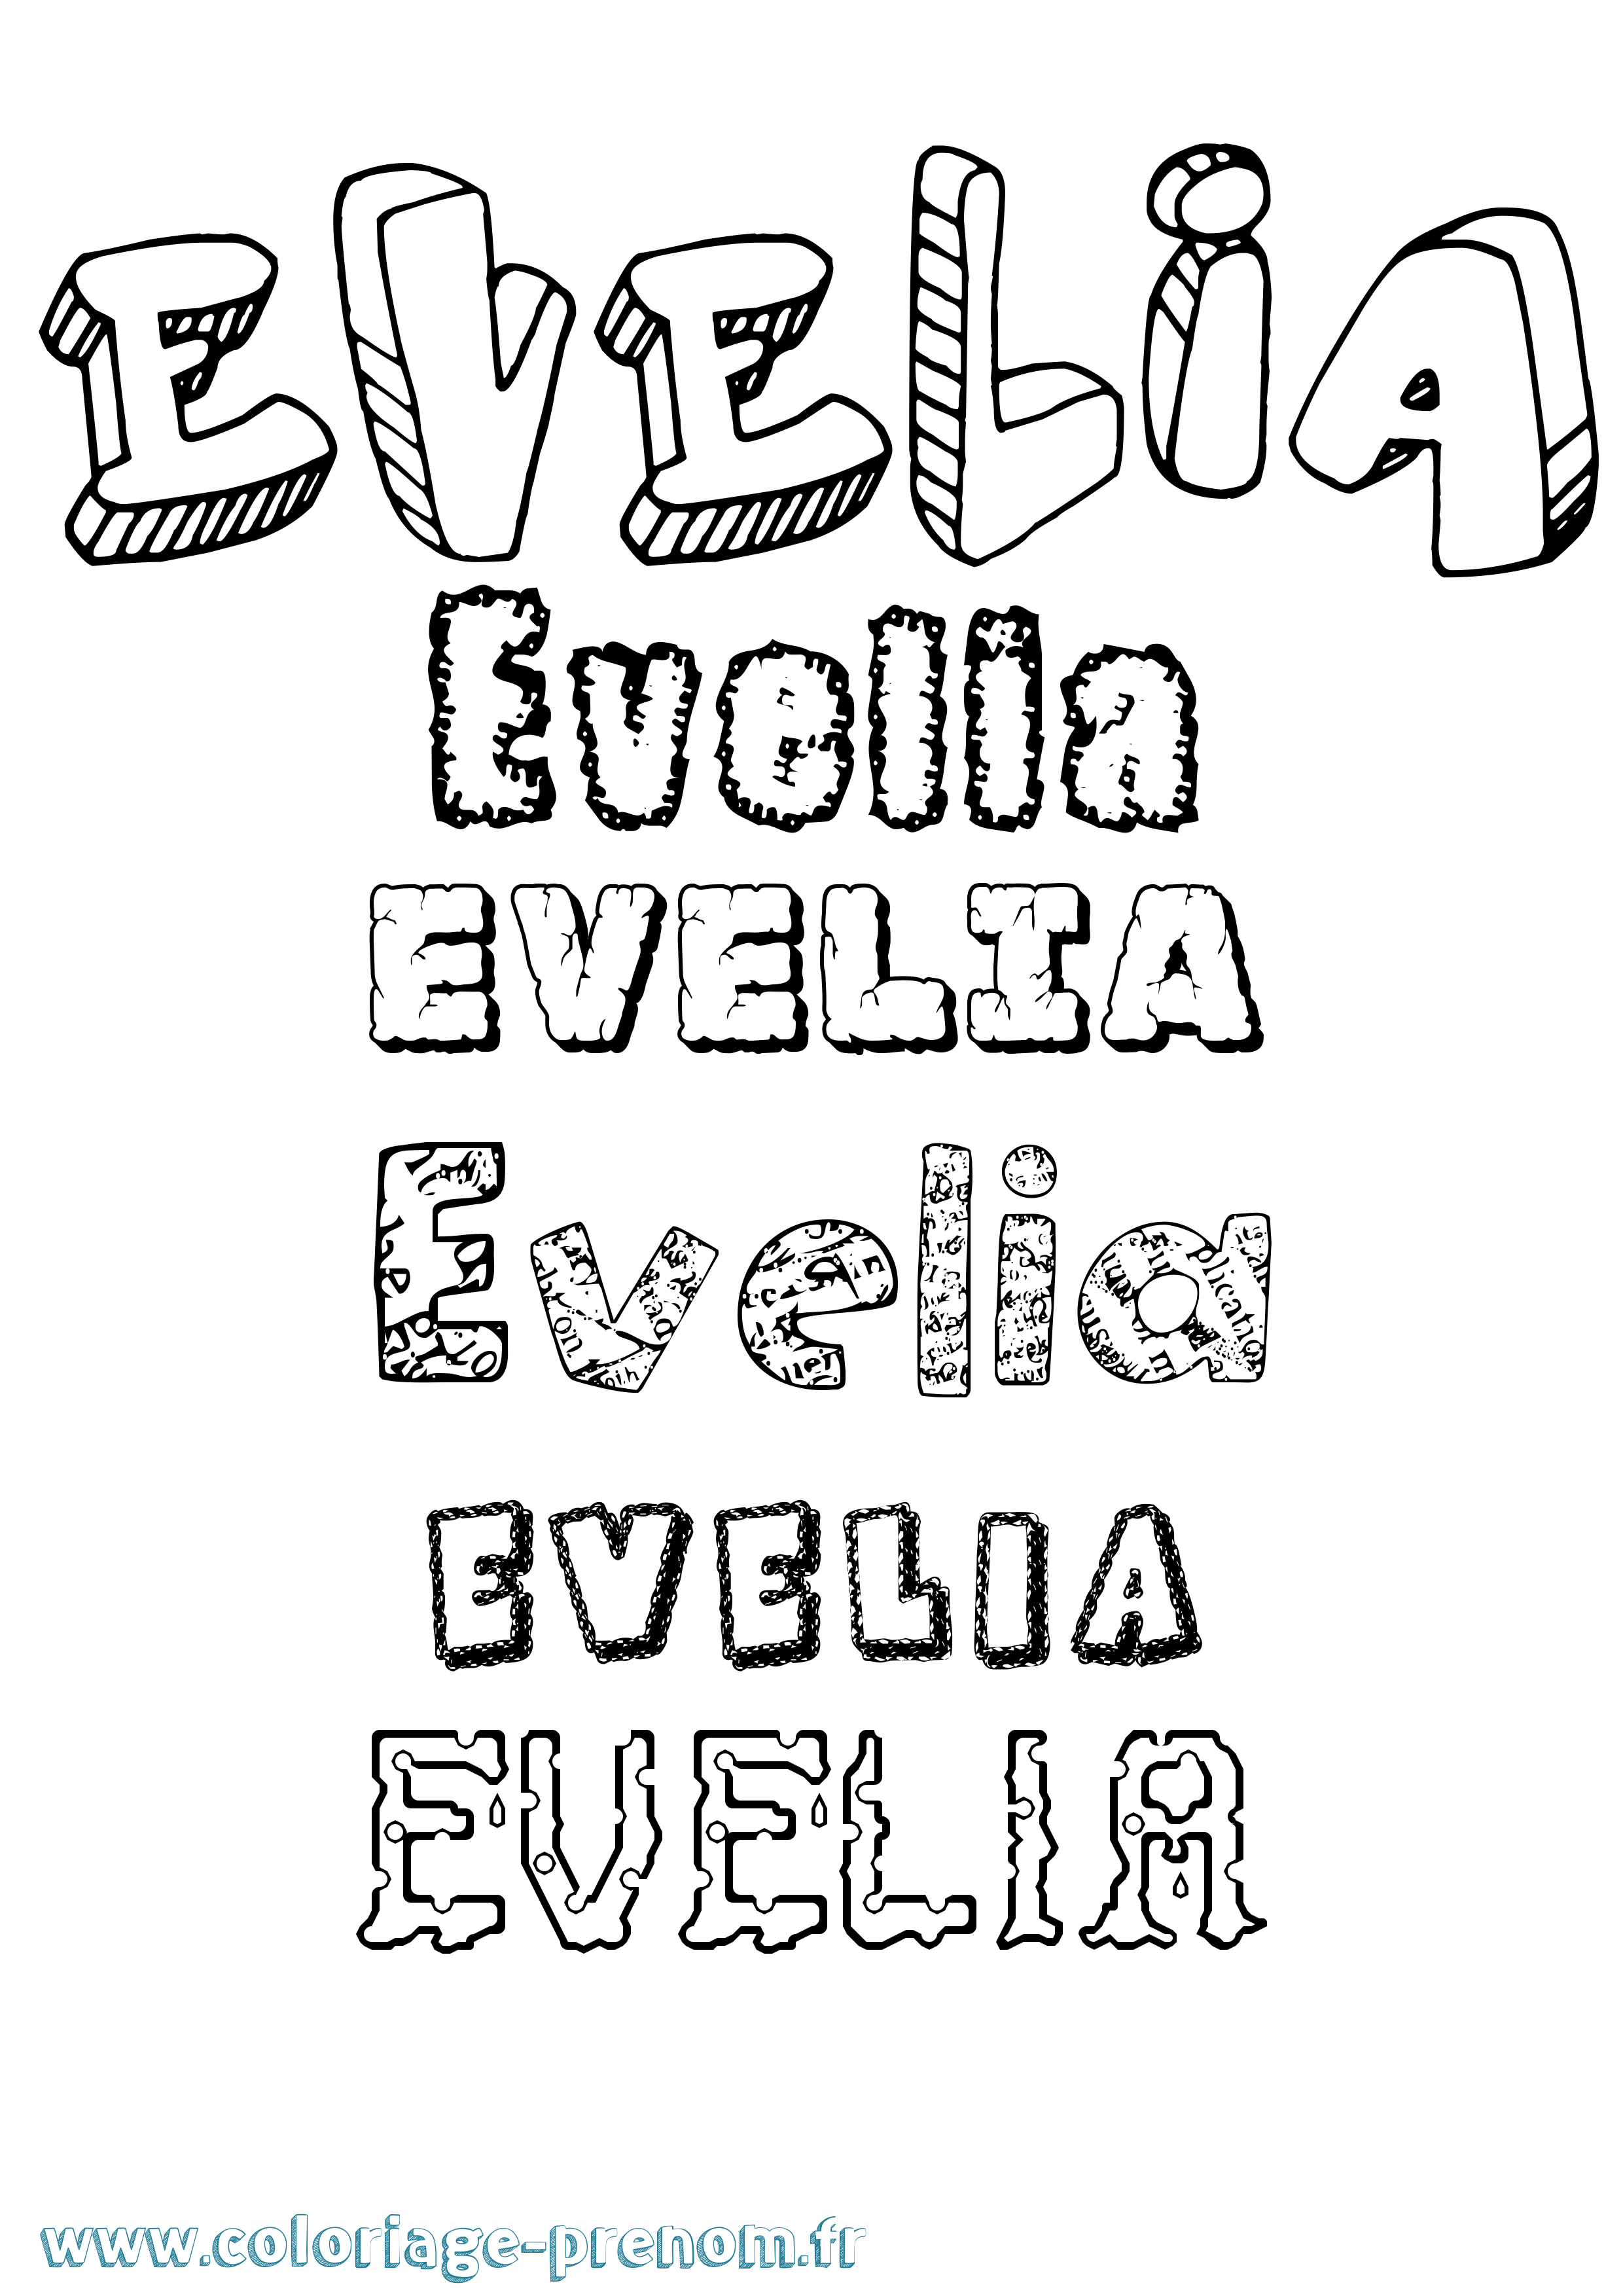 Coloriage prénom Evelia Destructuré